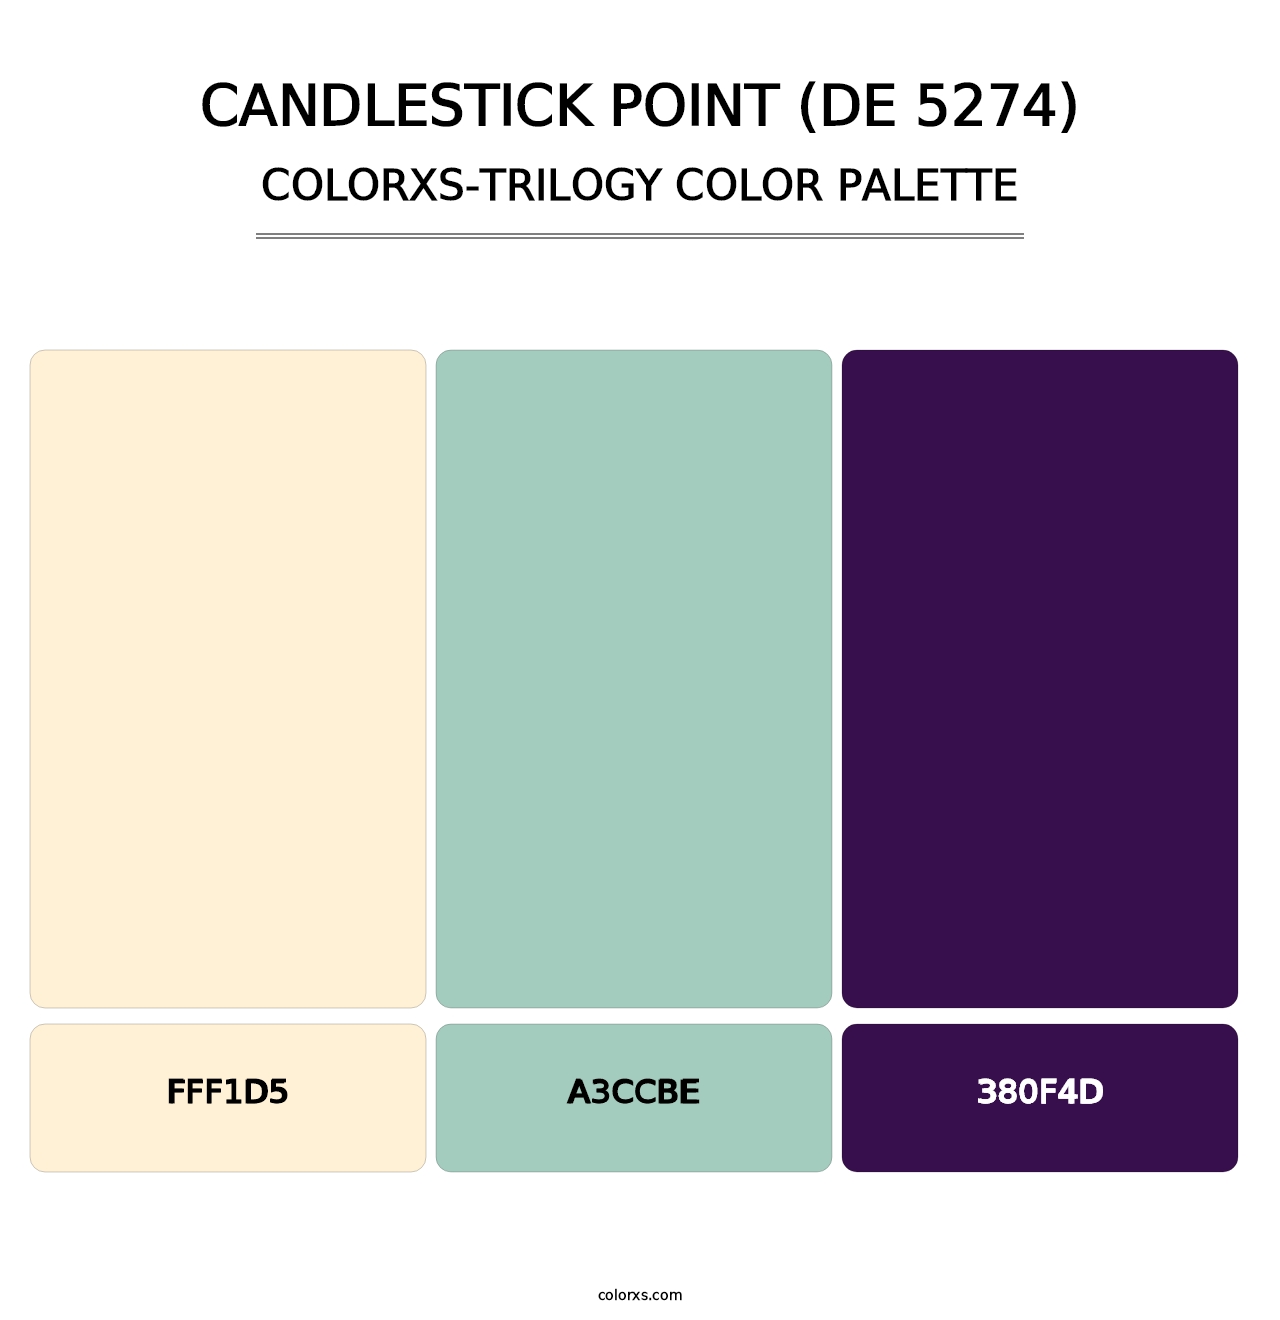 Candlestick Point (DE 5274) - Colorxs Trilogy Palette